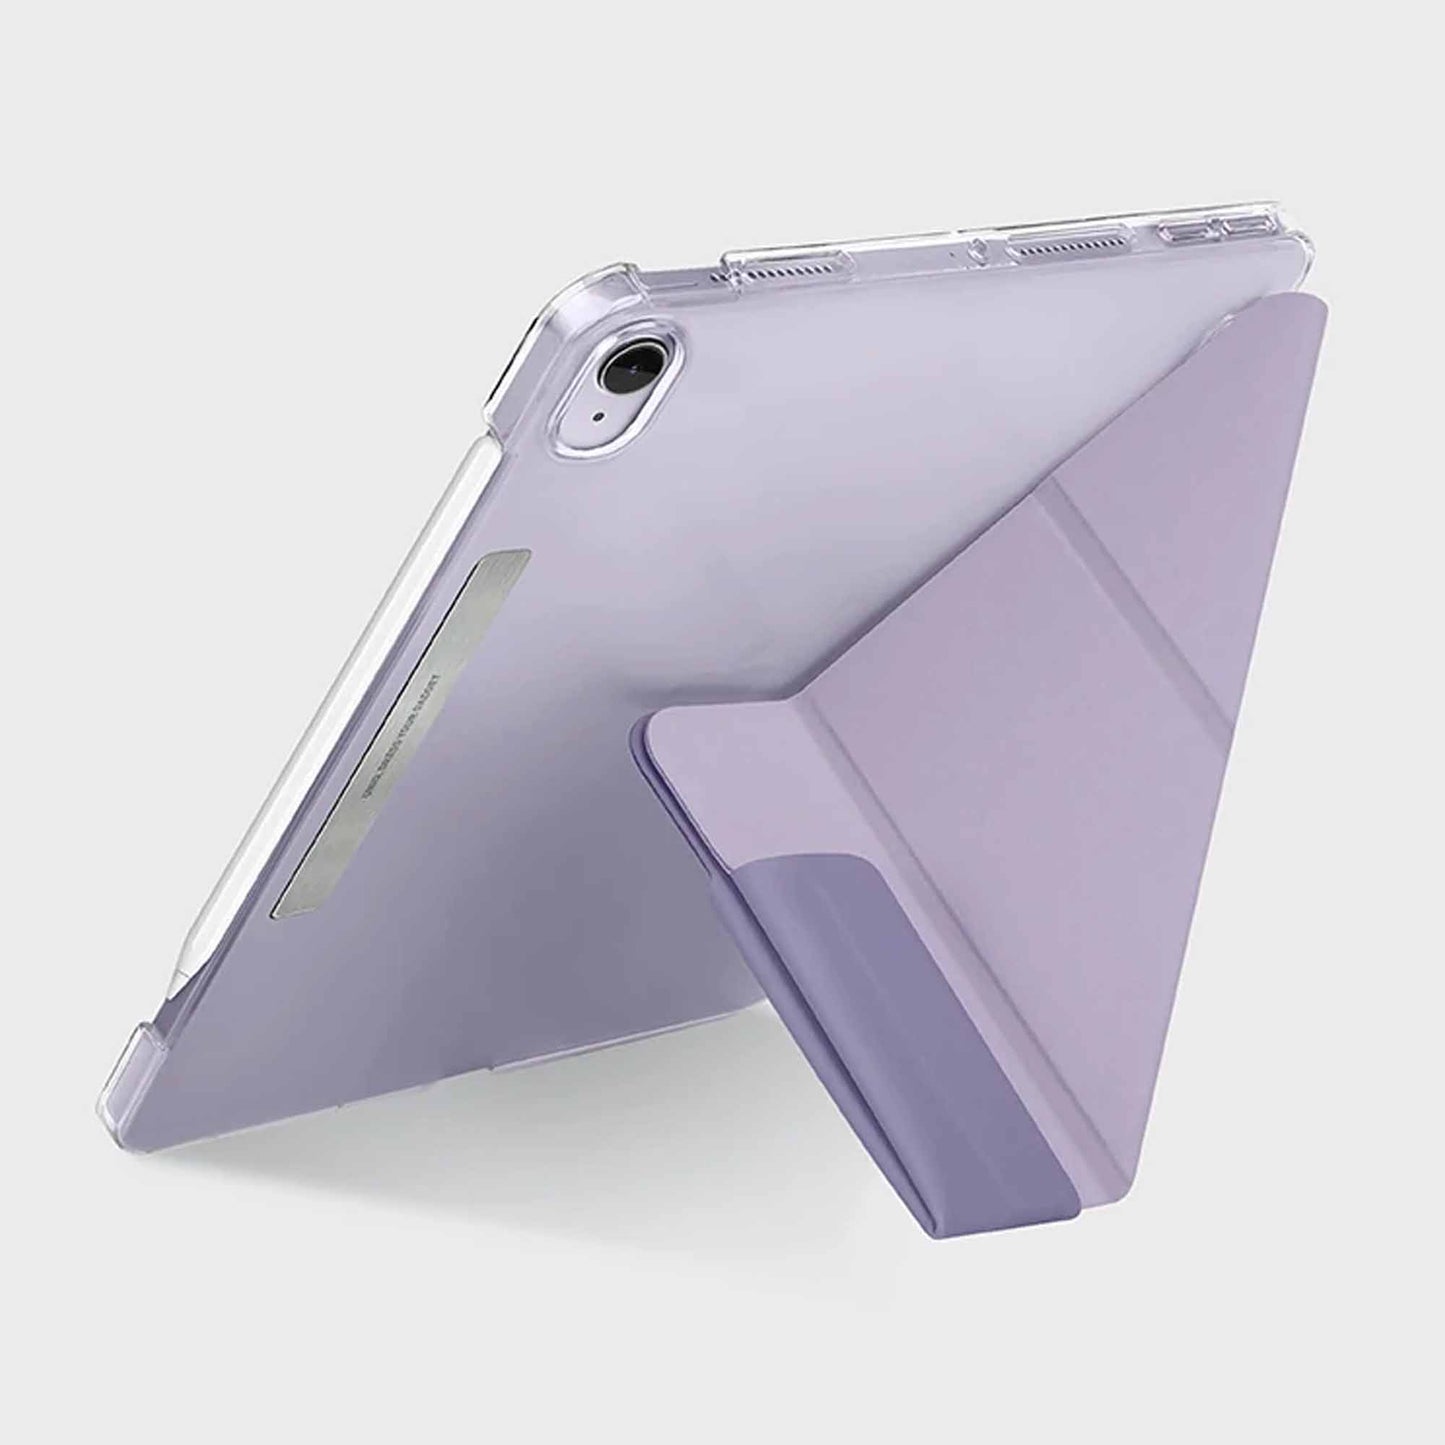 UNIQ Camden Case for iPad Mini 6 ( 2021 ) - Grey (Barcode: 8886463678644 )